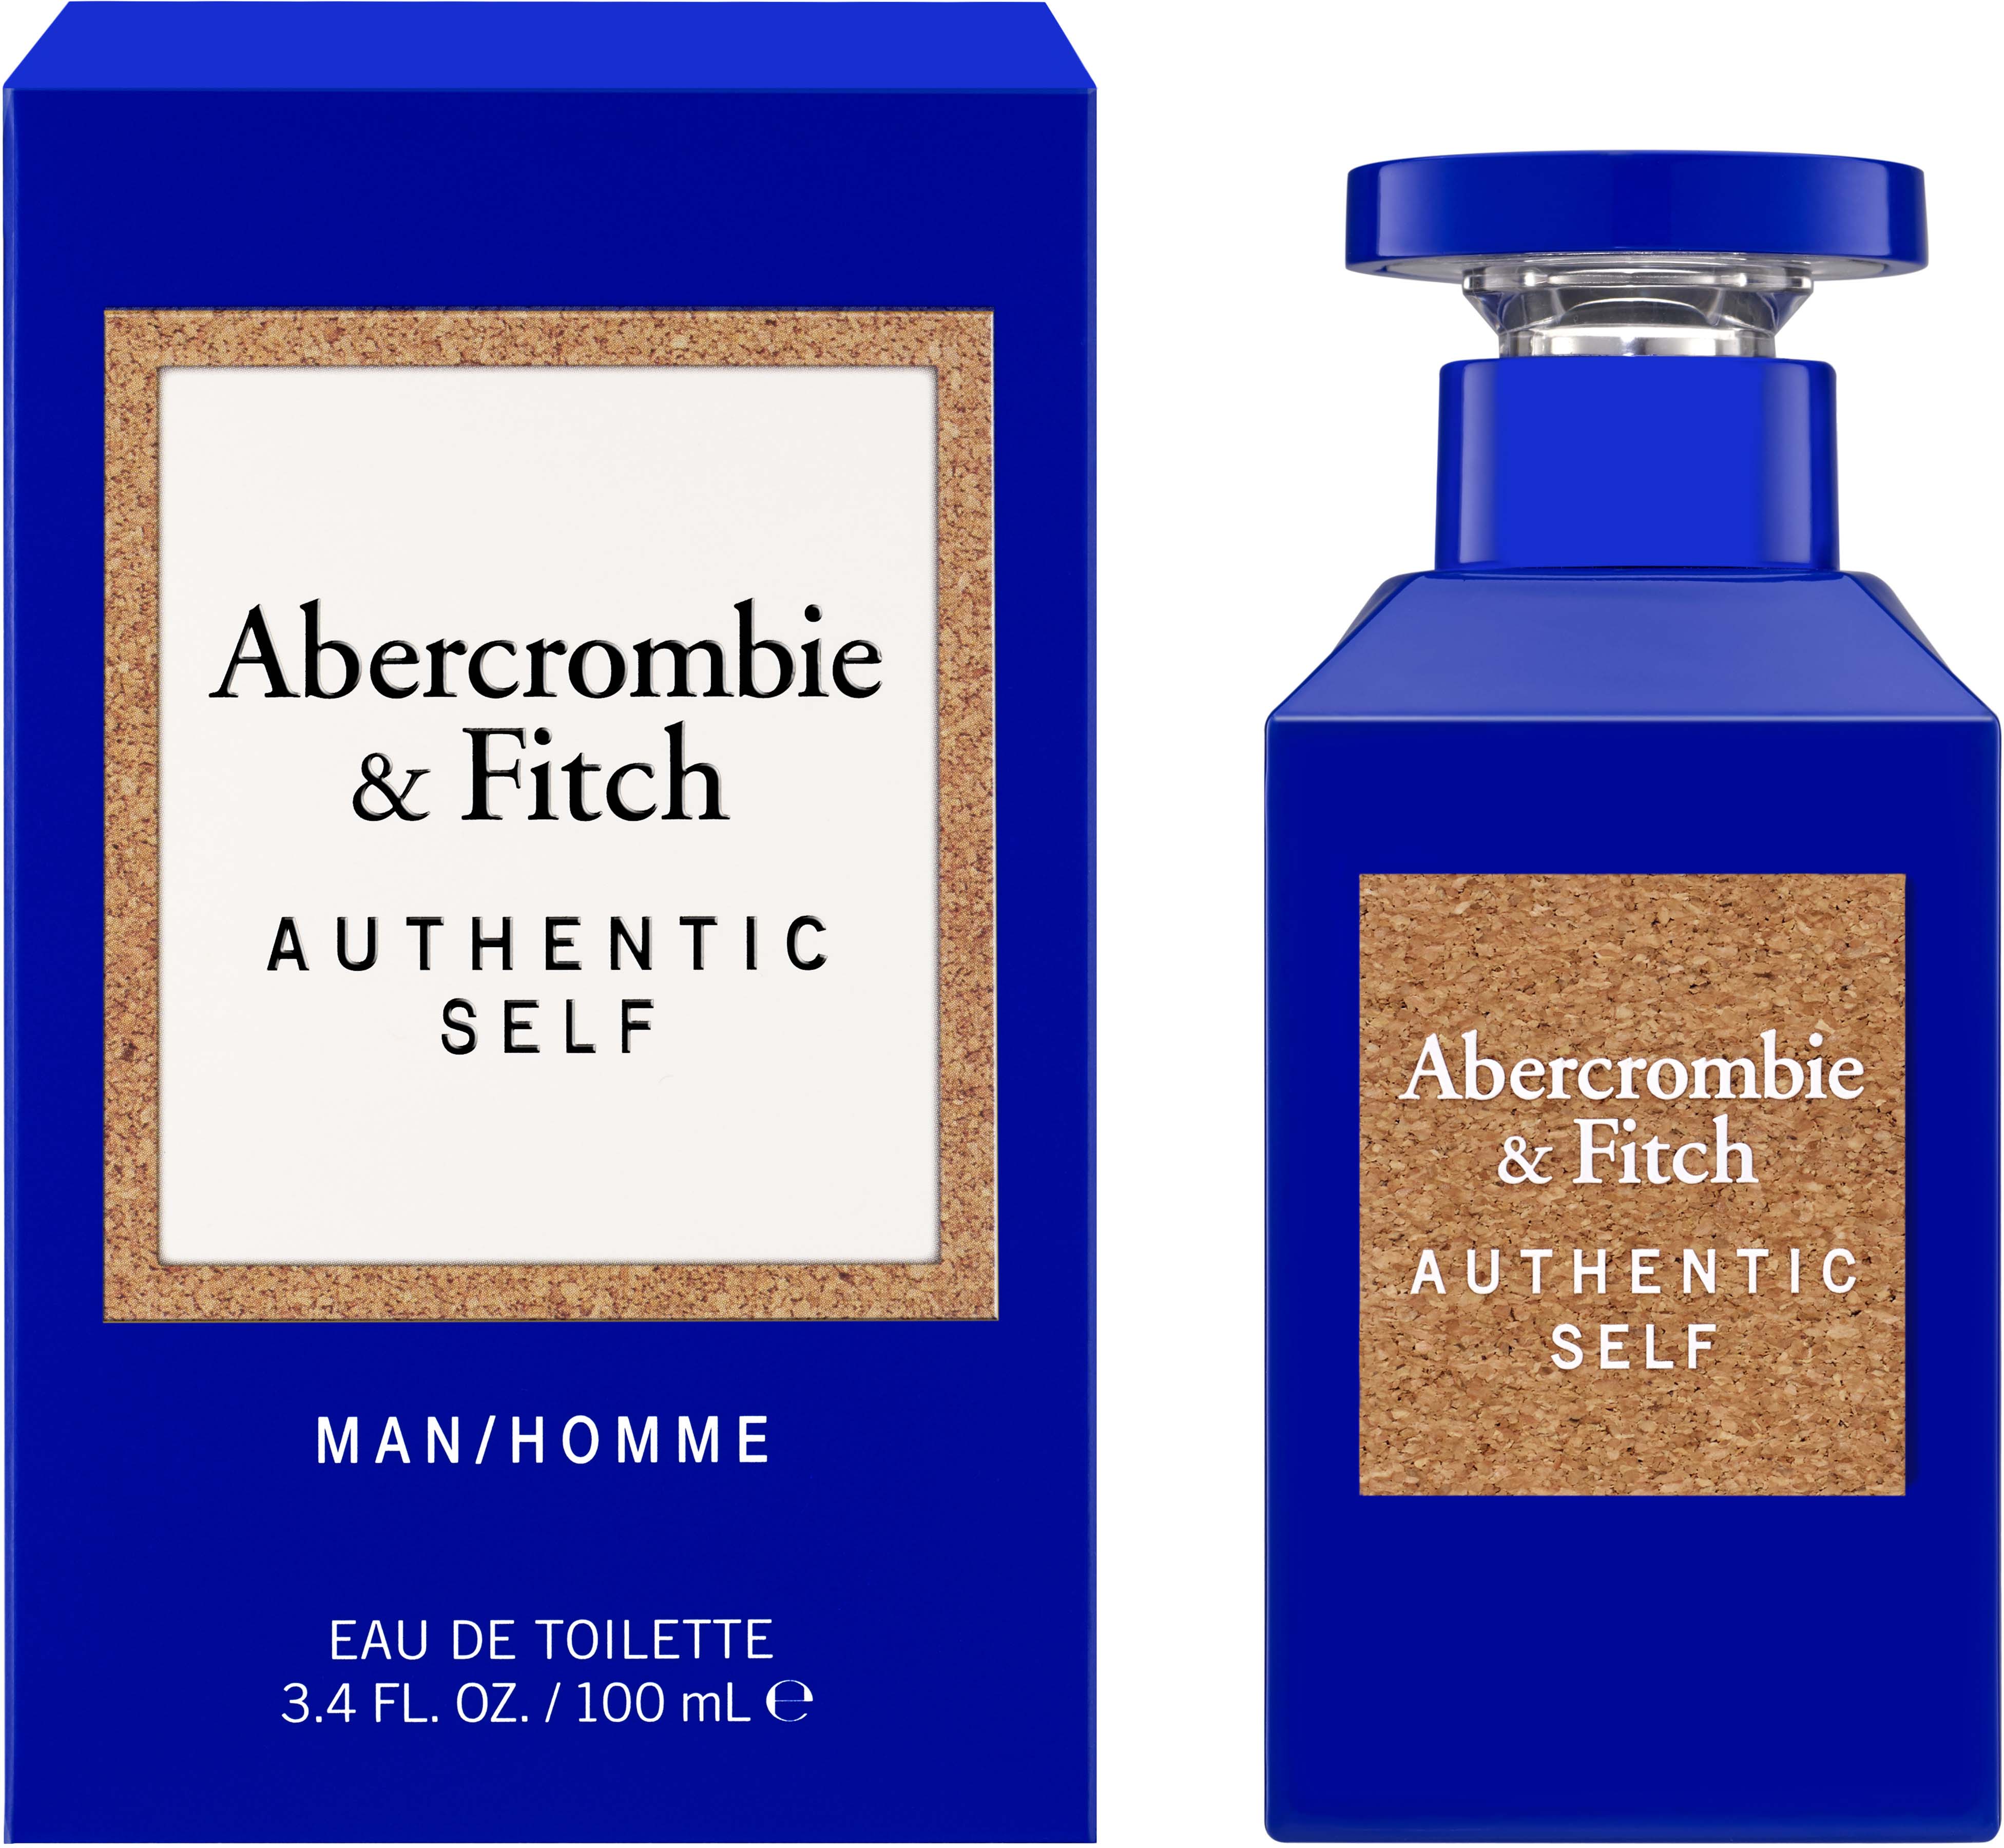 Abercrombie & Fitch Authentic 100 ml Toilette Eau de Self Men